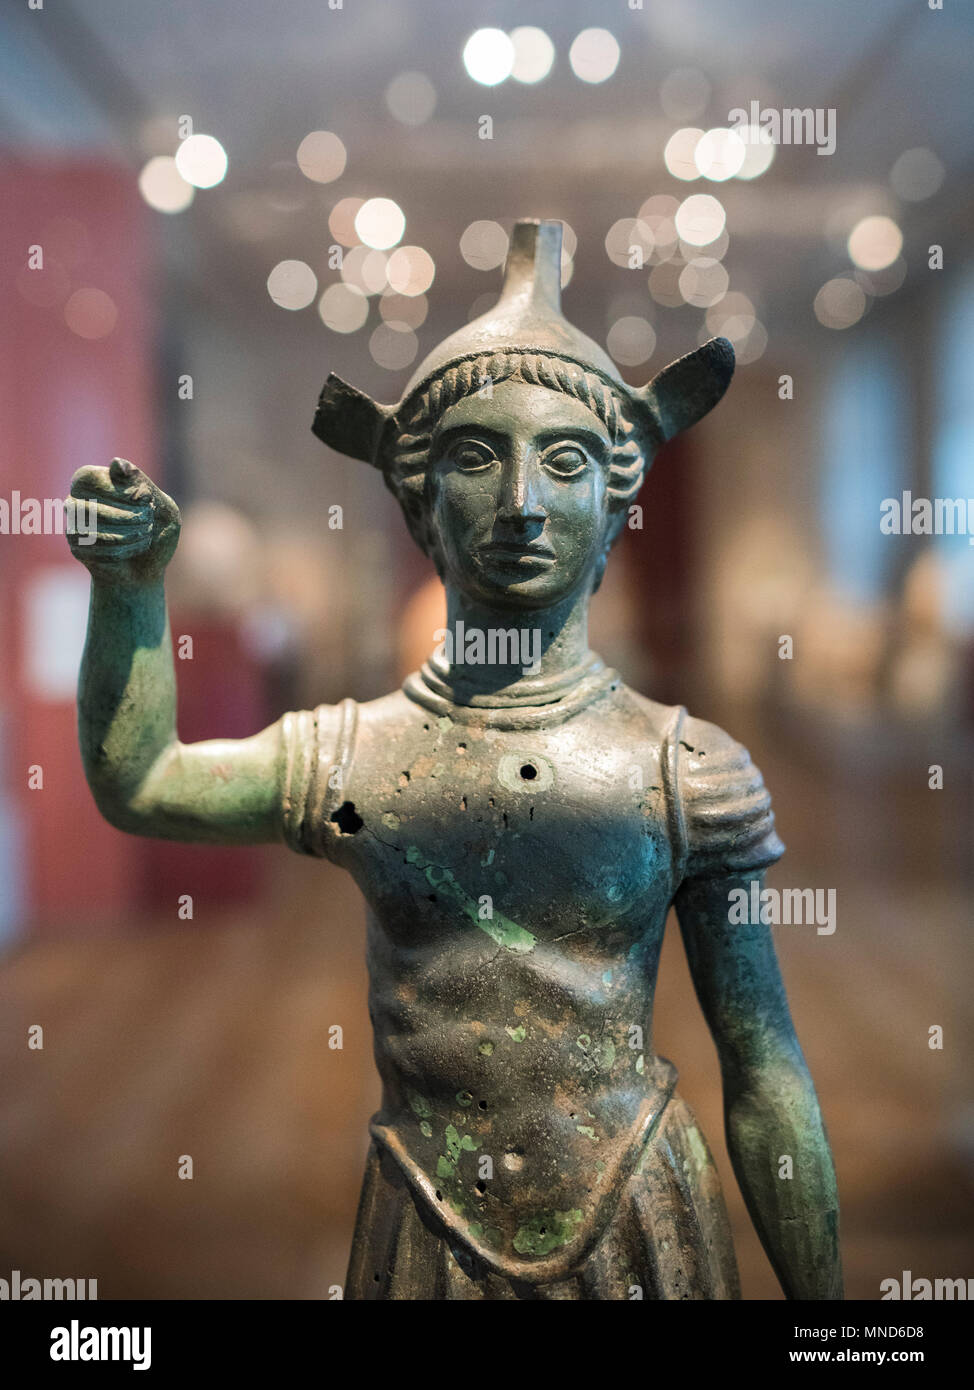 Berlín. Alemania. Estatuilla de un guerrero etrusco, 5to siglo A.C., bronce fundido, Altes Museum. El joven guerrero viste armadura y casco, la mejilla Foto de stock